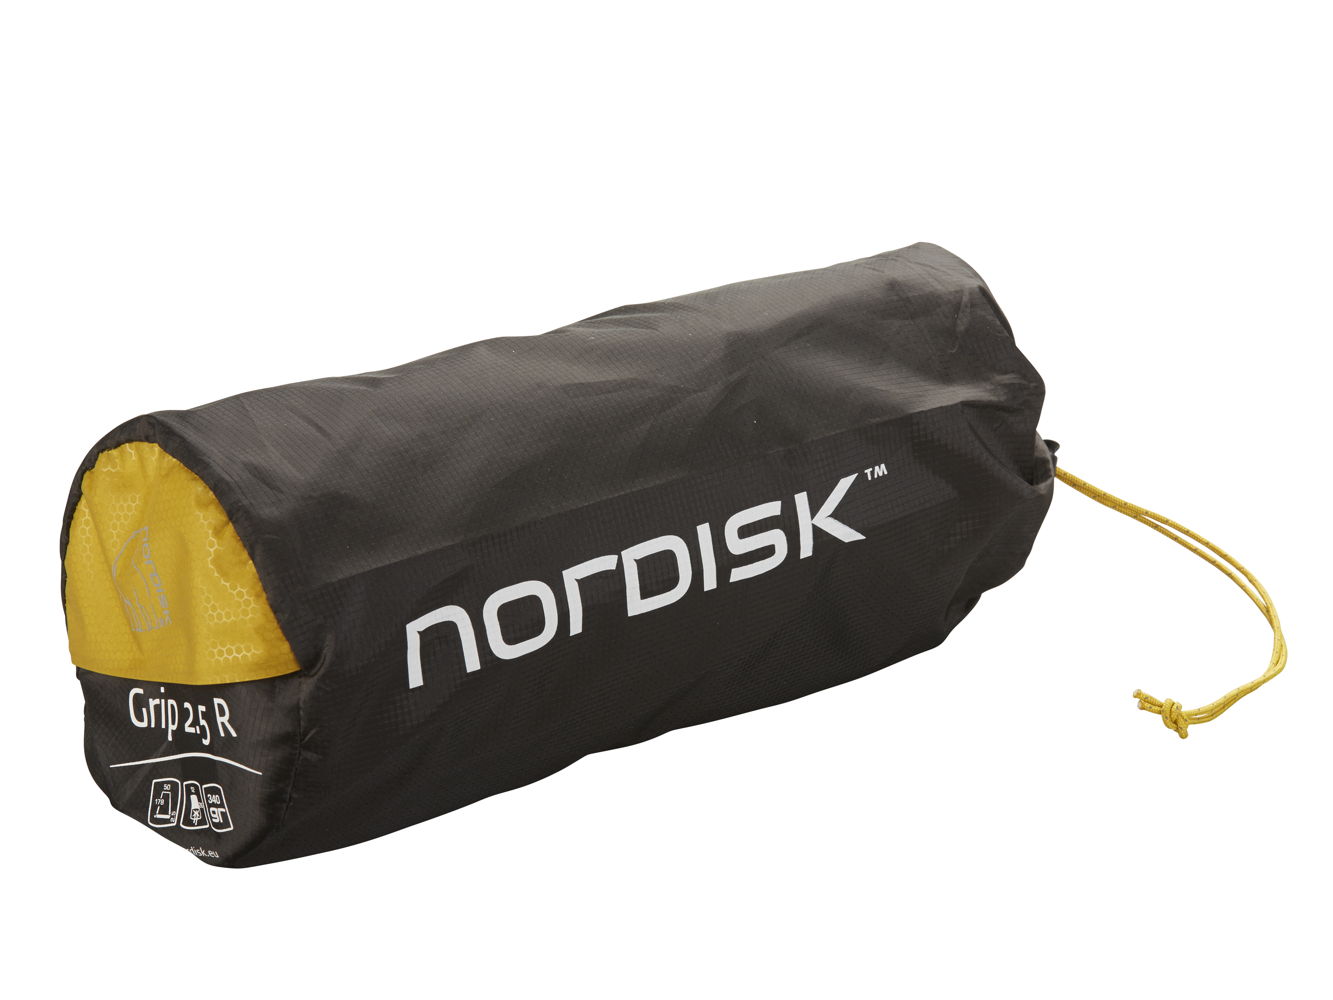 Nordisk - Grip 2.5 slaapmatje (verpakt)